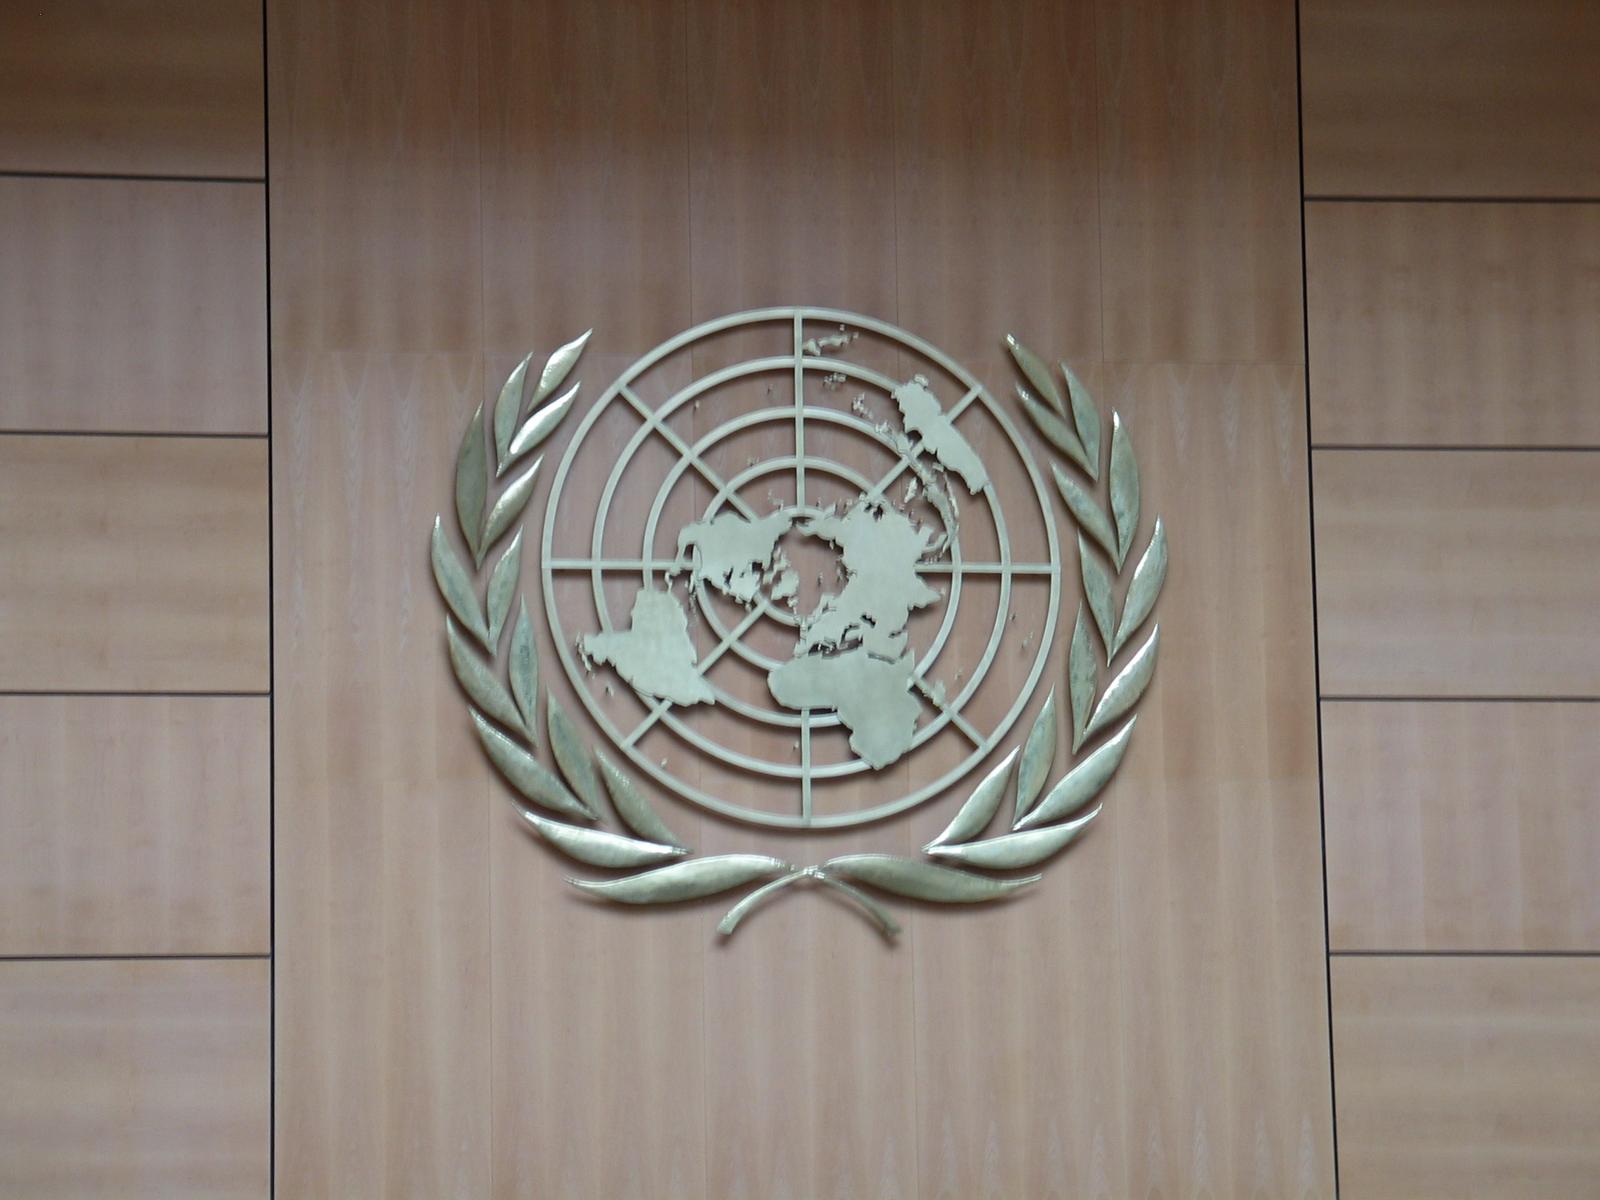 The UN insignia